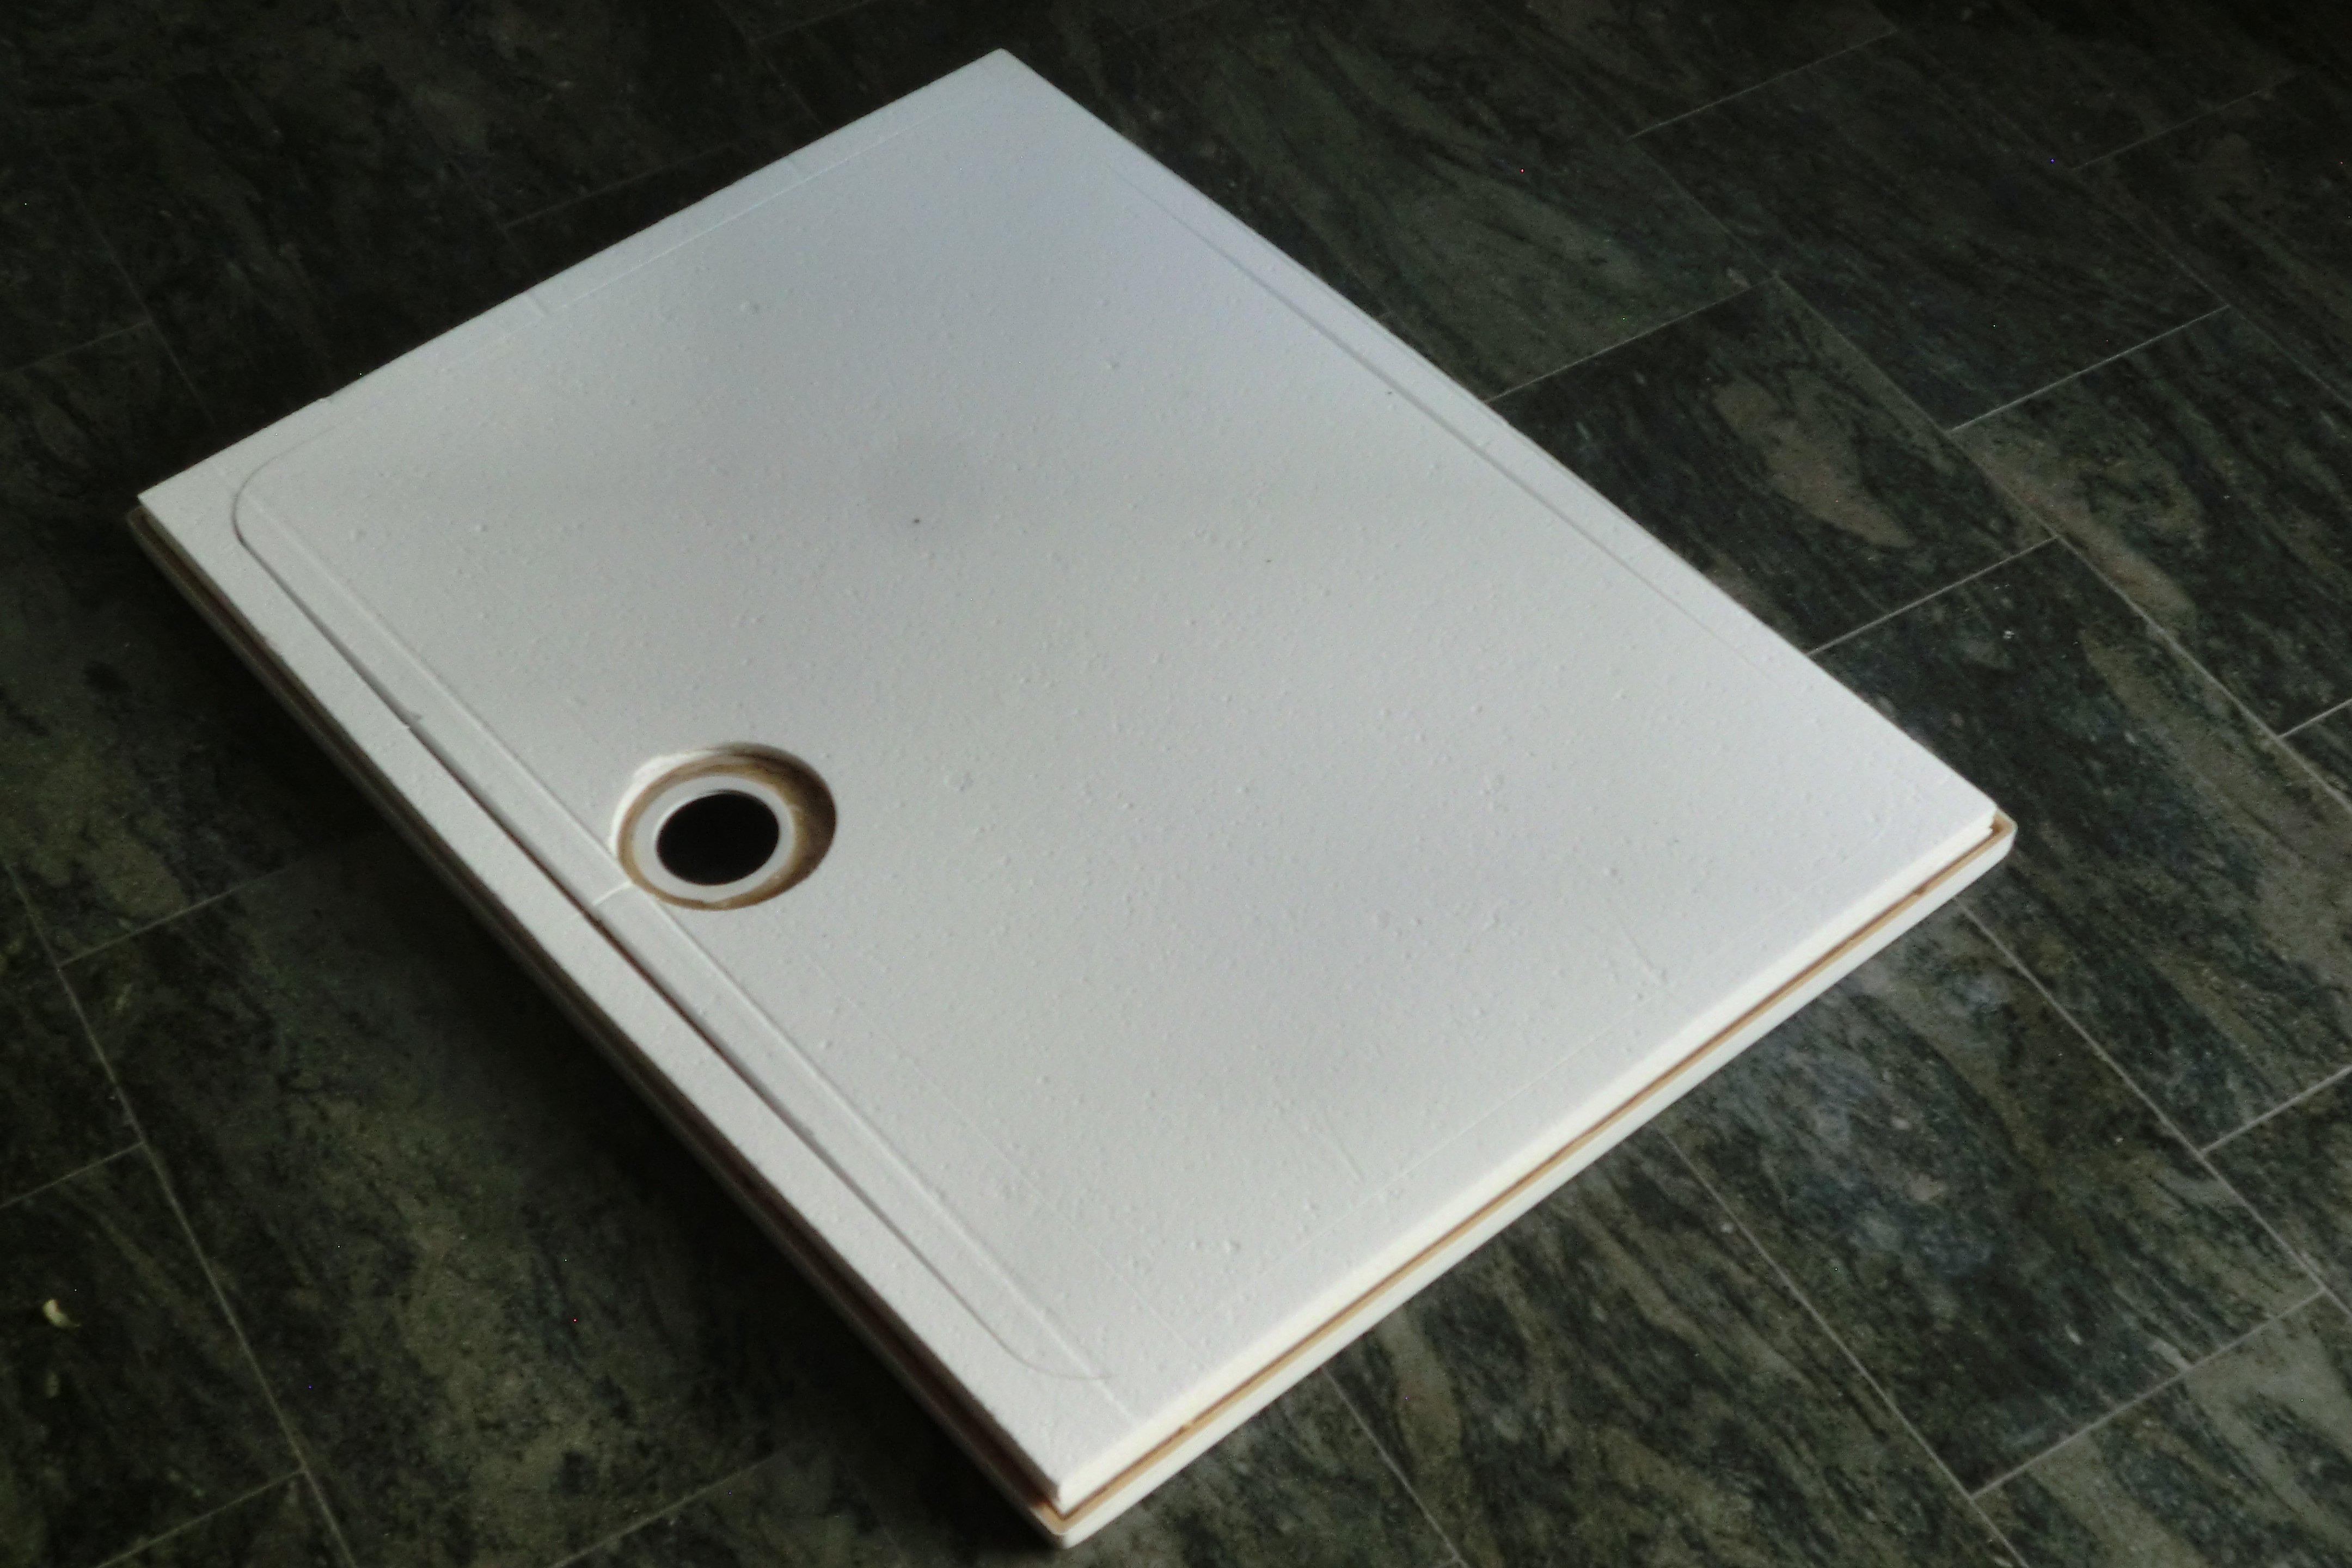 KOMPLETT-PAKET: Duschwanne 120 x 80 cm superflach 3,5 cm weiß mit GERADER STYROPOR-UNTERSEITE Acryl + Styroporträger/Wannenträger + Ablaufgarnitur chrom DN 90